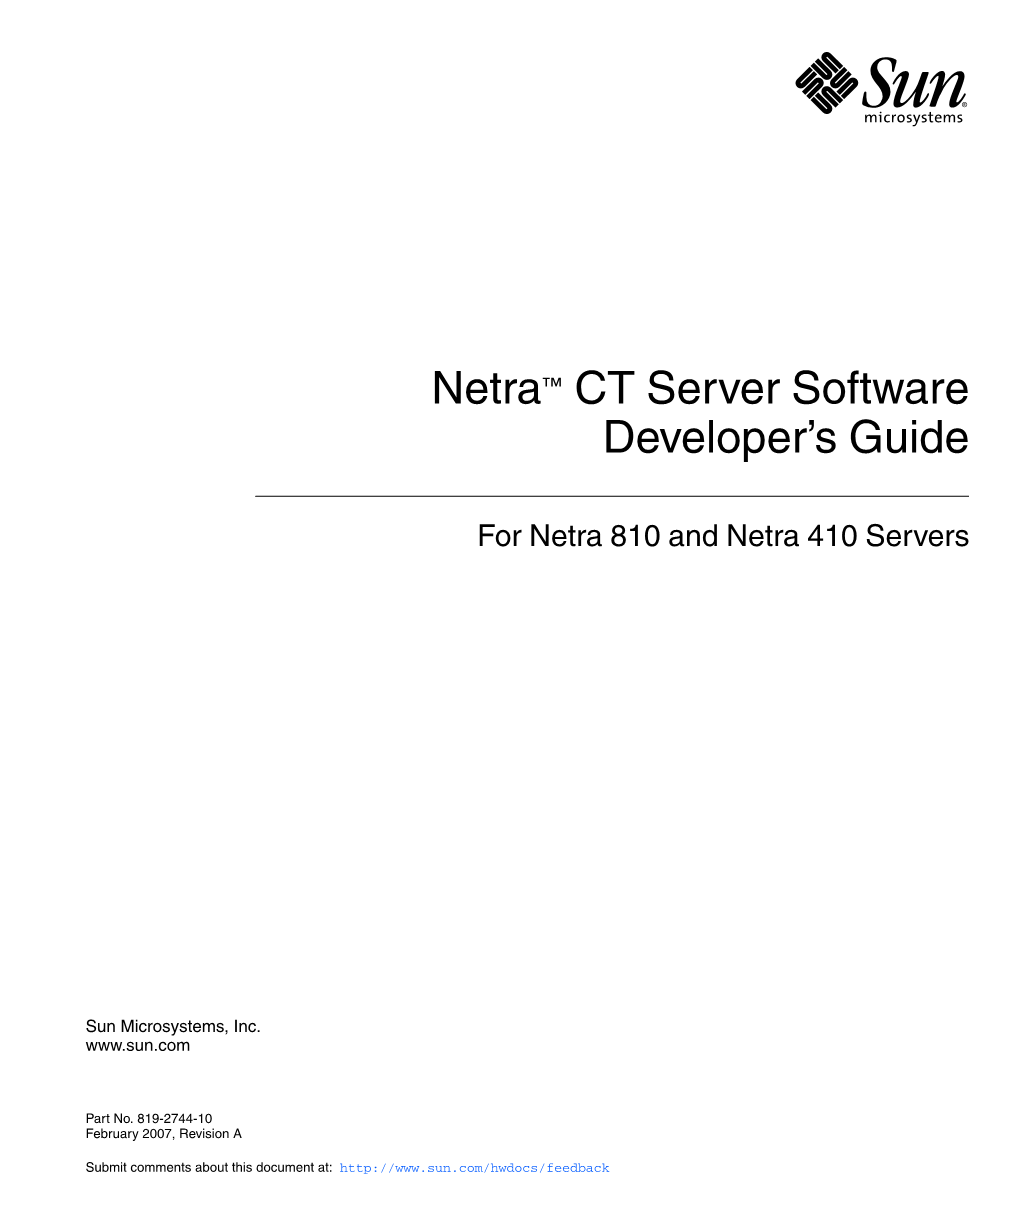 Netra CT 810/410 Server Software Developer's Guide